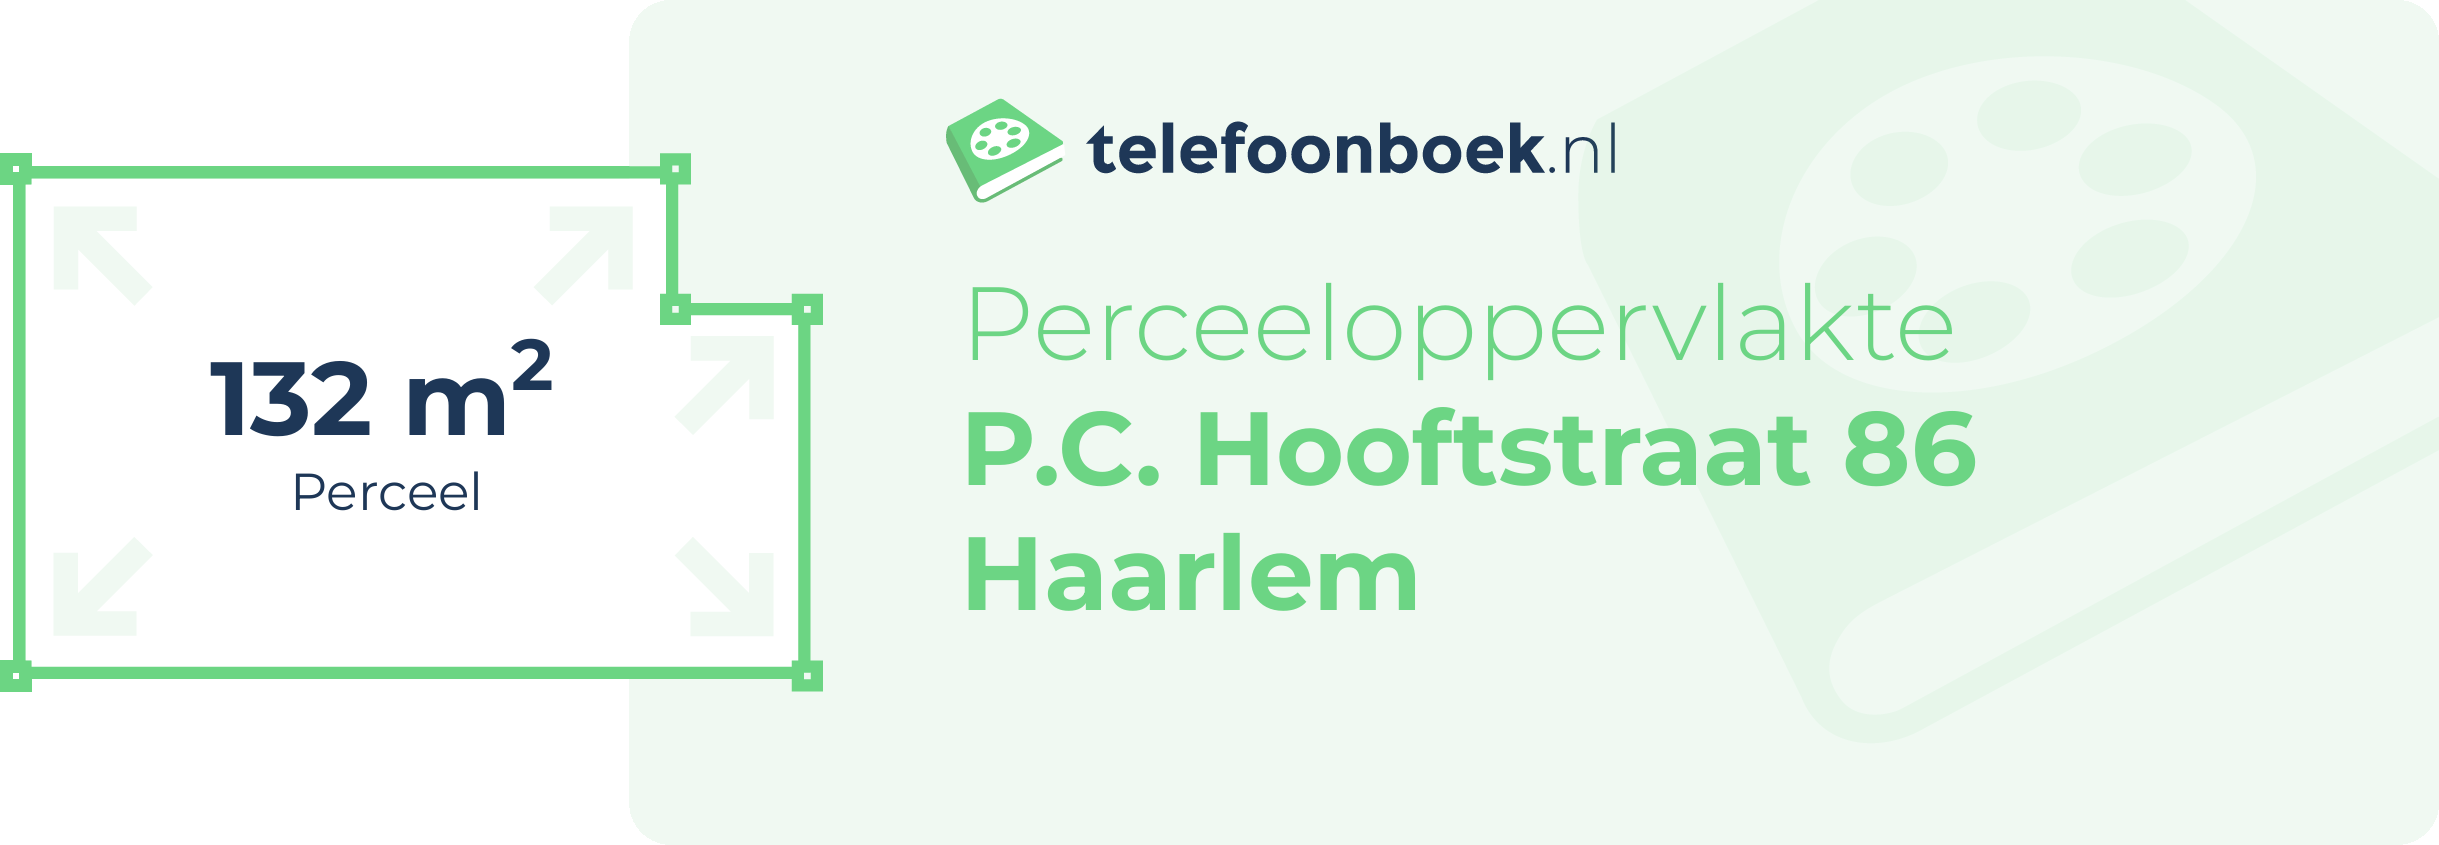 Perceeloppervlakte P.C. Hooftstraat 86 Haarlem